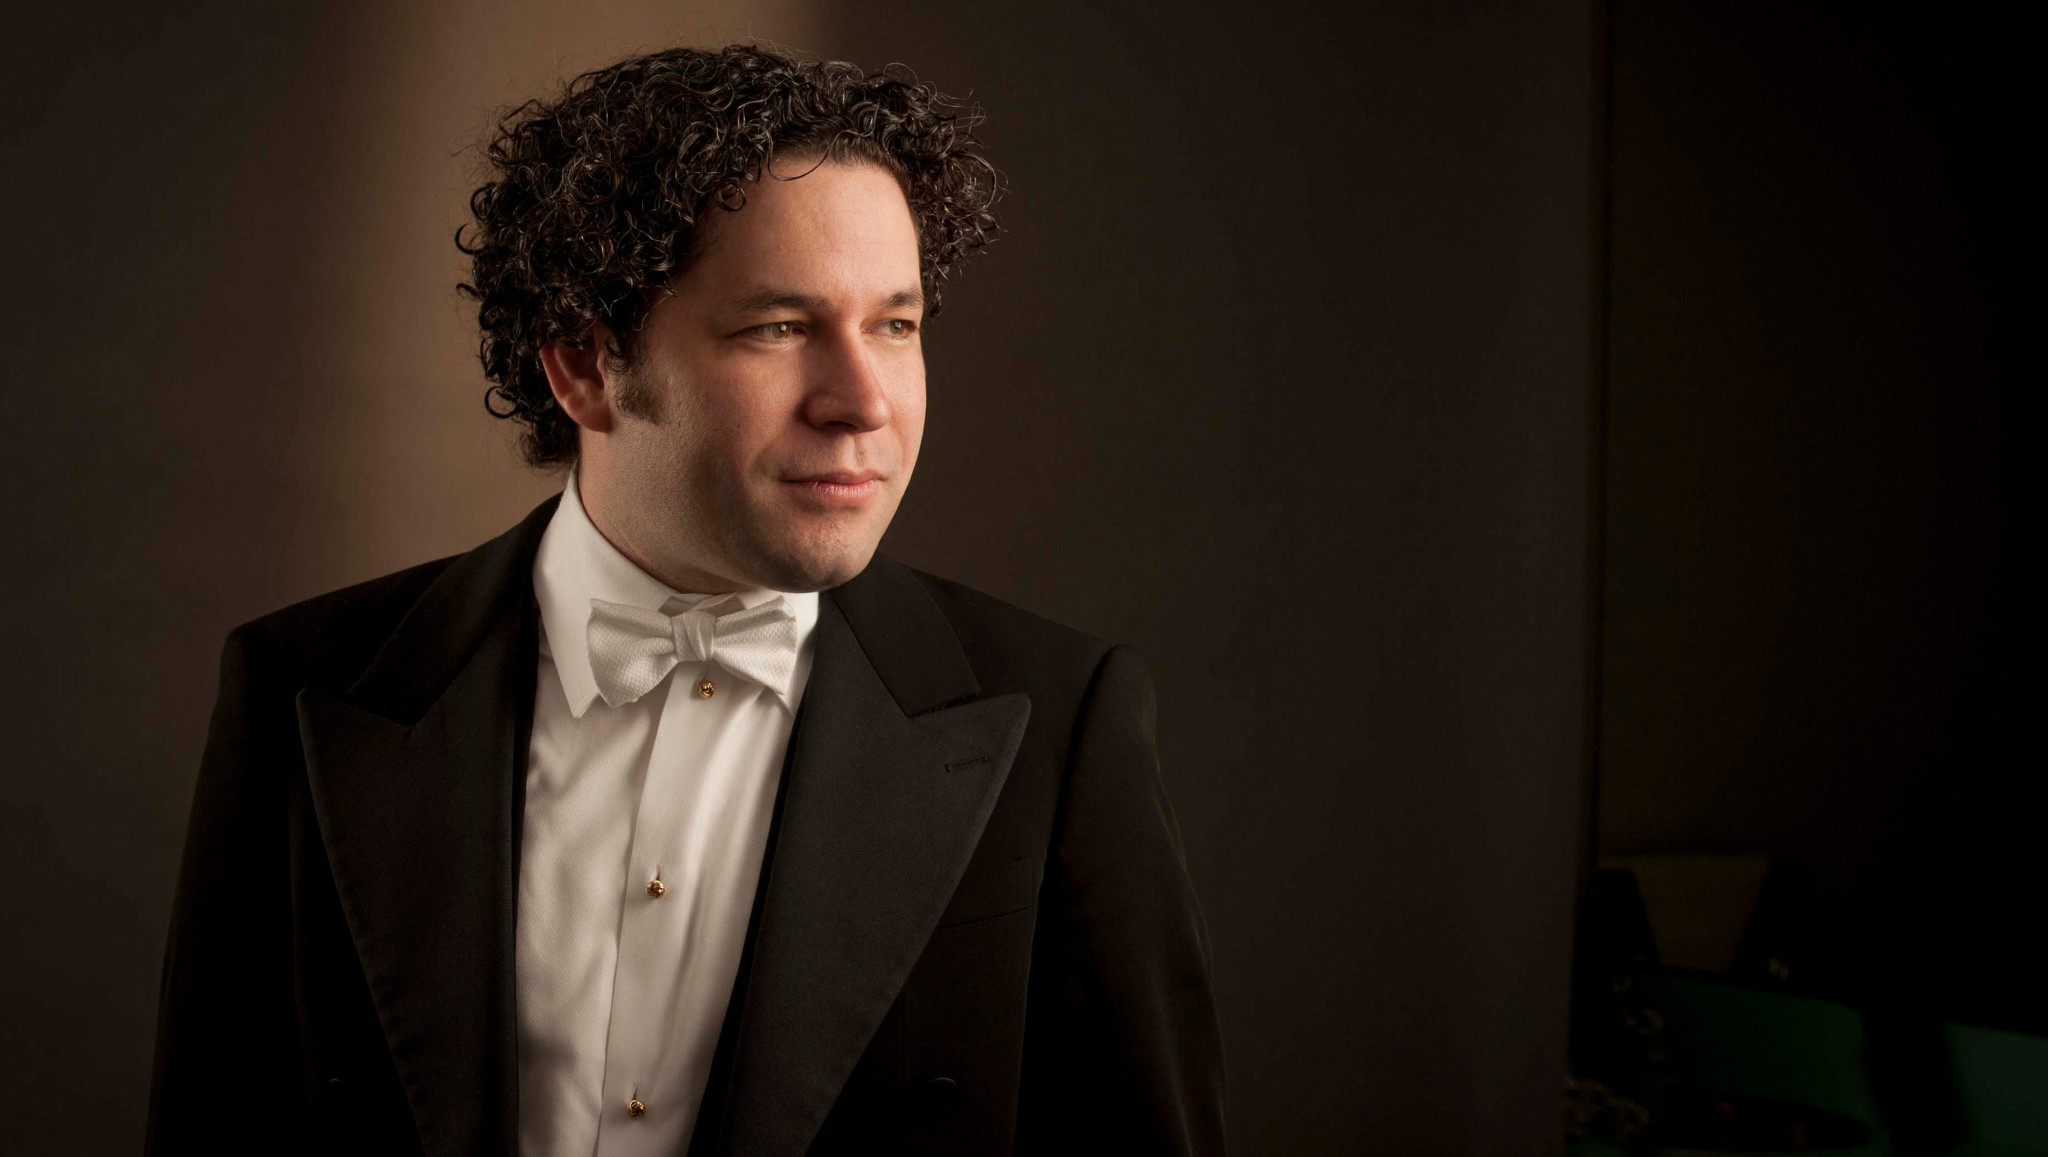 Gustavo Dudamel stimmt gemeinsam mit Los Angeles Philharmonic mit Tschaikowskys "Nussknacker" auf Weihnachten ein